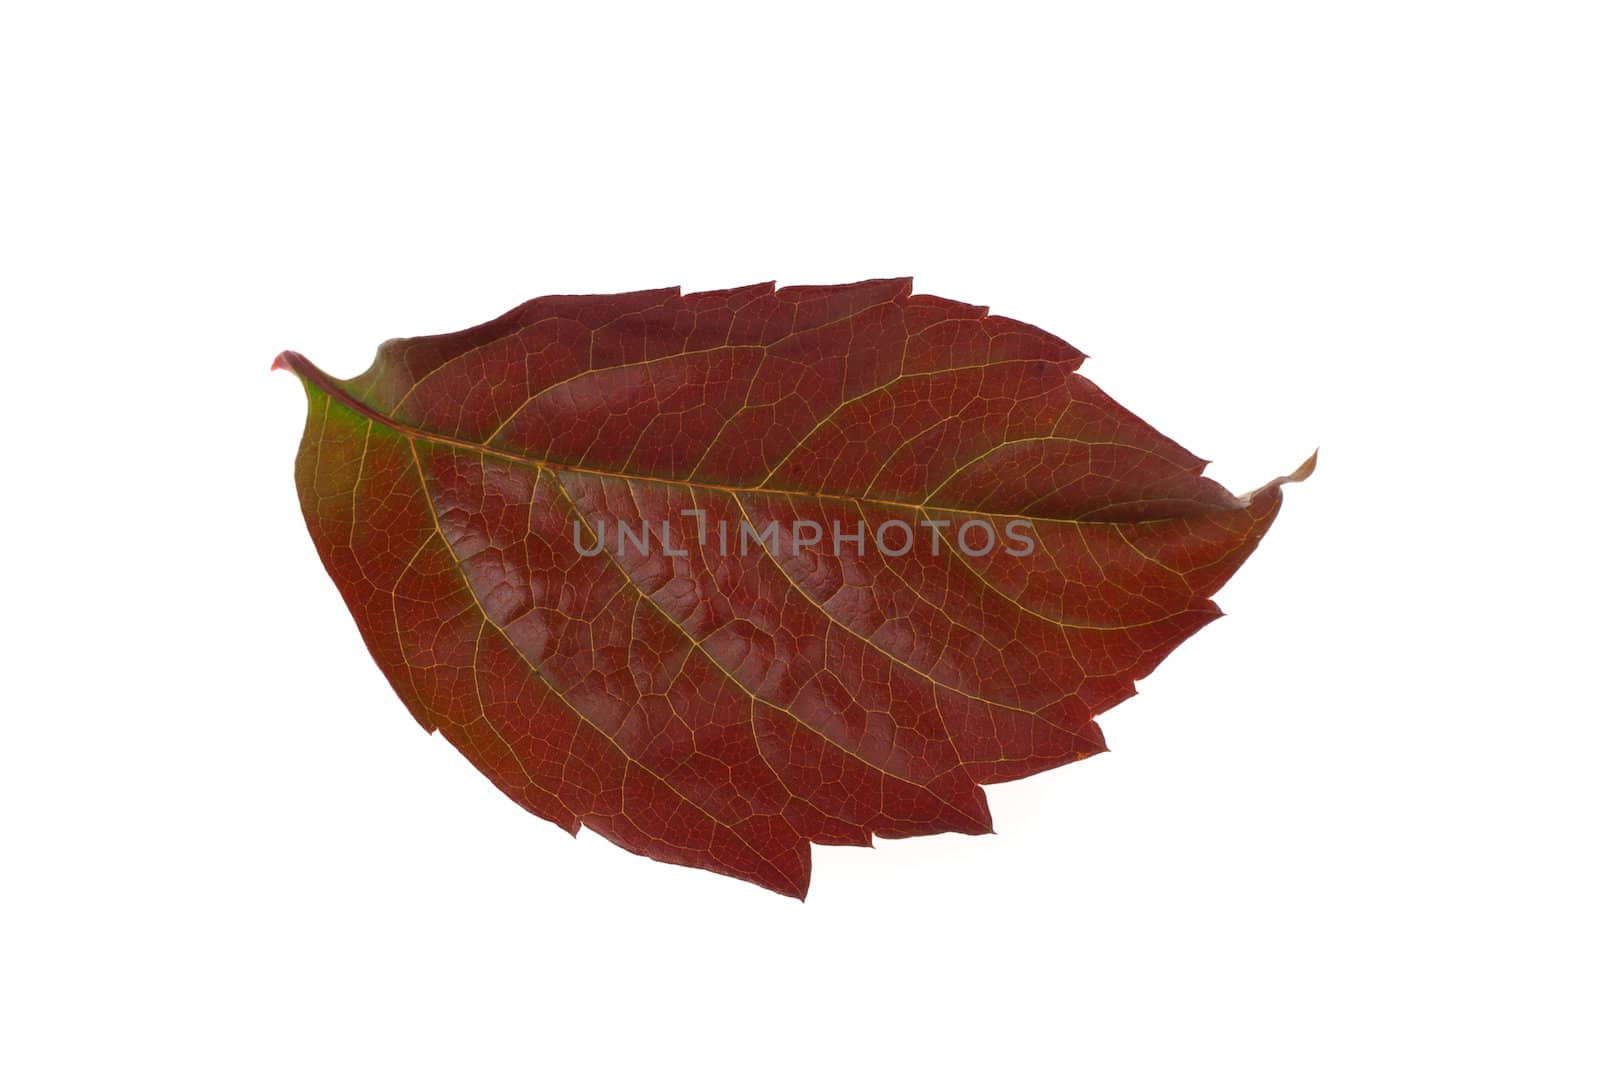 Autumn leaf by aguirre_mar